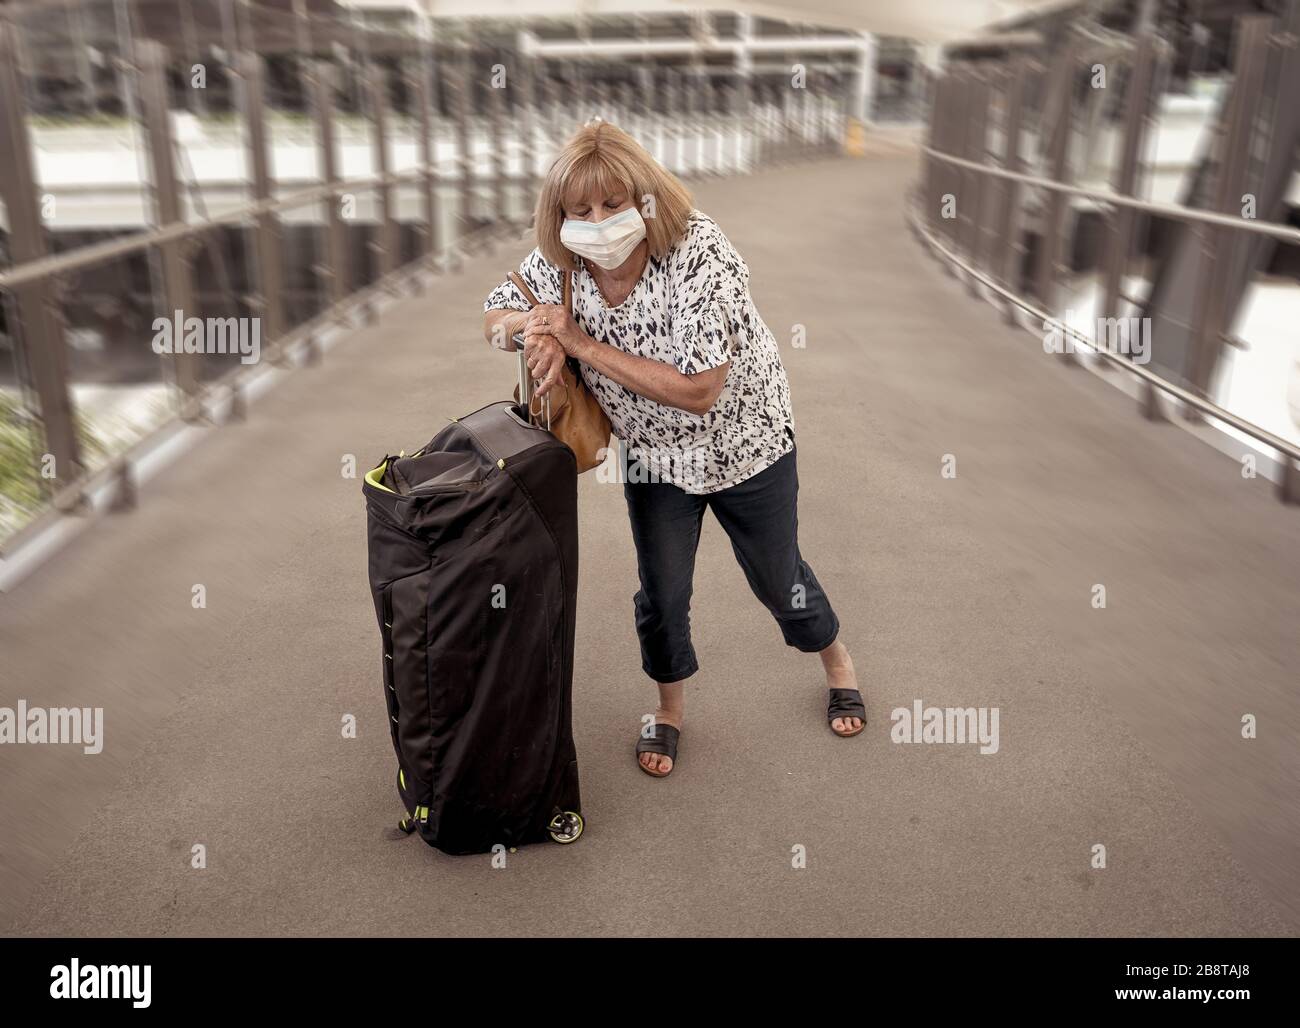 Reiseverbot für Coronavirus Outbreak und Einschränkungen. Reisender Mann mit Gesichtsmaske am internationalen Flughafen von Flugstornierung betroffen. COVID-19 pande Stockfoto